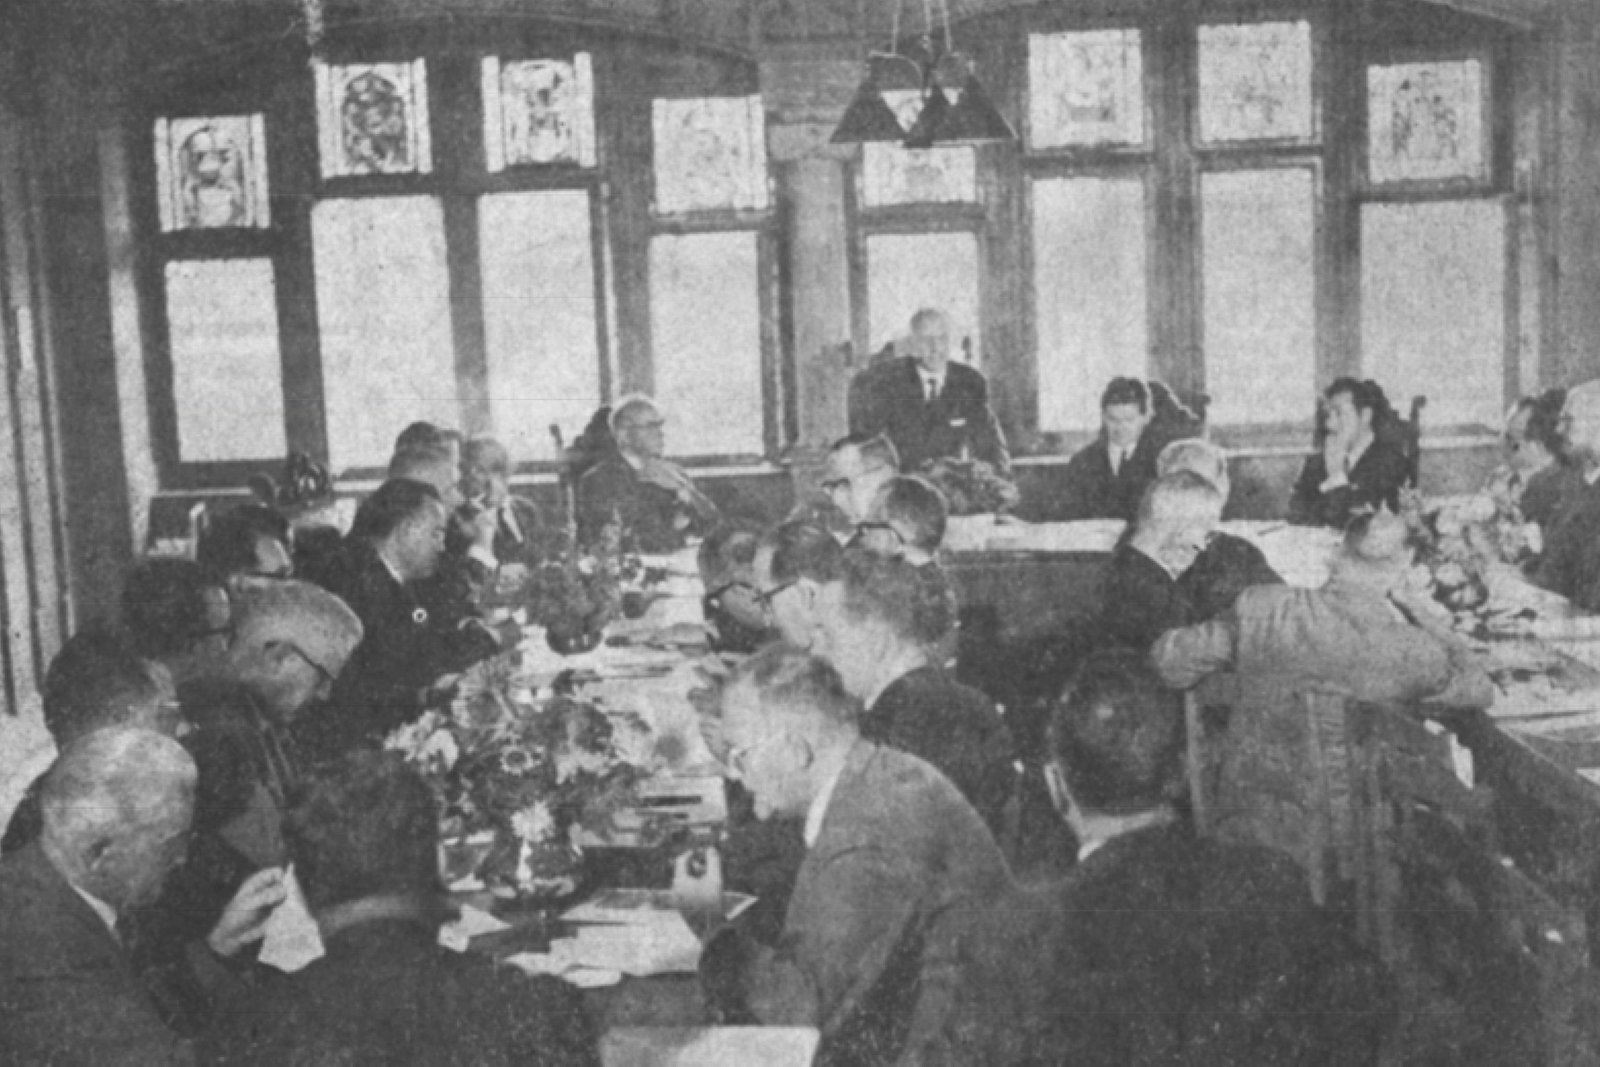 Etwa zwanzig eher ältere Männer sitzen beidseits an Tischen, die in Hufeisenform angeordnet sind. Sie hören einem Redner zu.